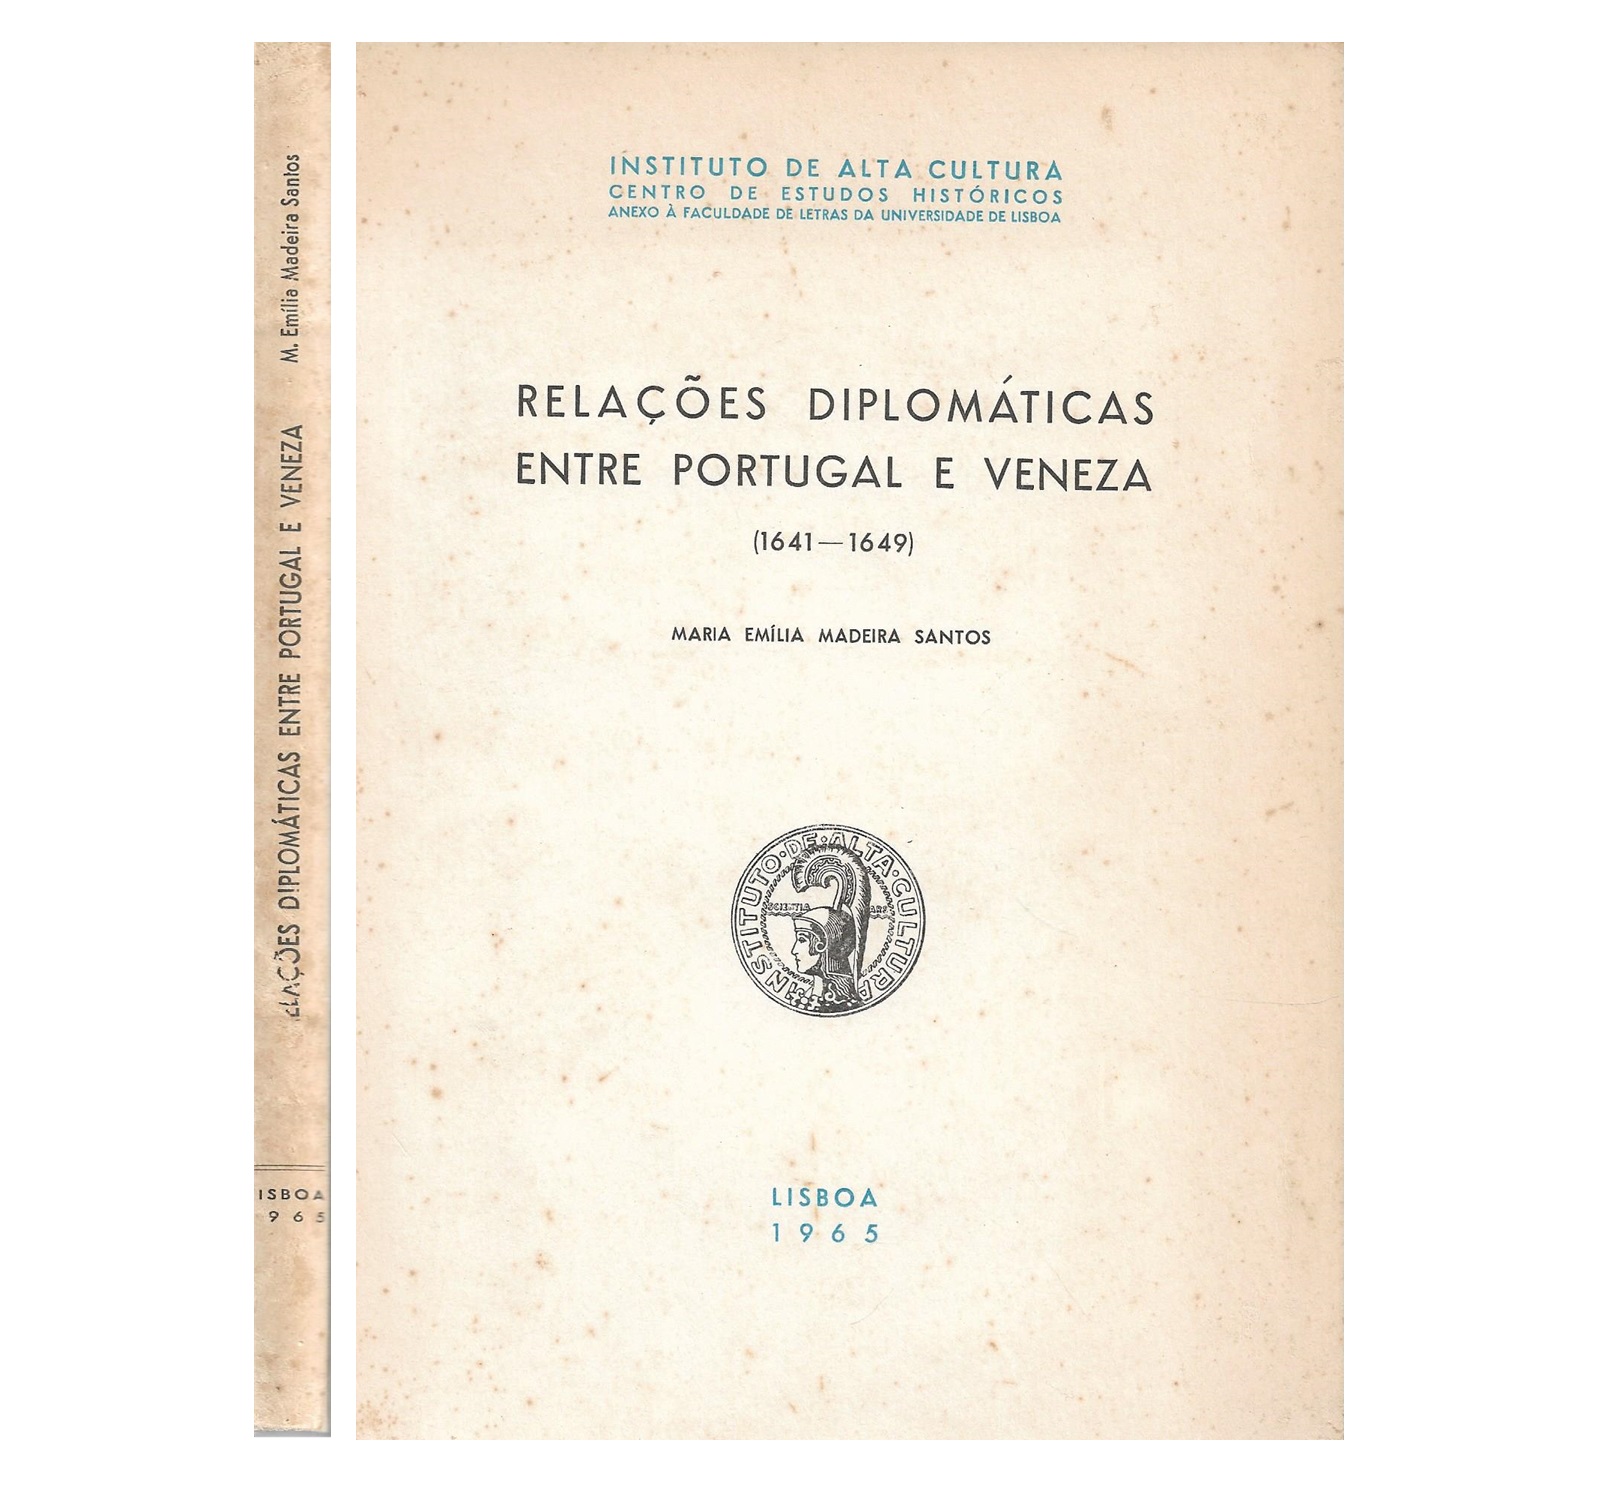 RELAÇÕES DIPLOMÁTICAS ENTRE PORTUGAL E VENEZA (1641-1649)